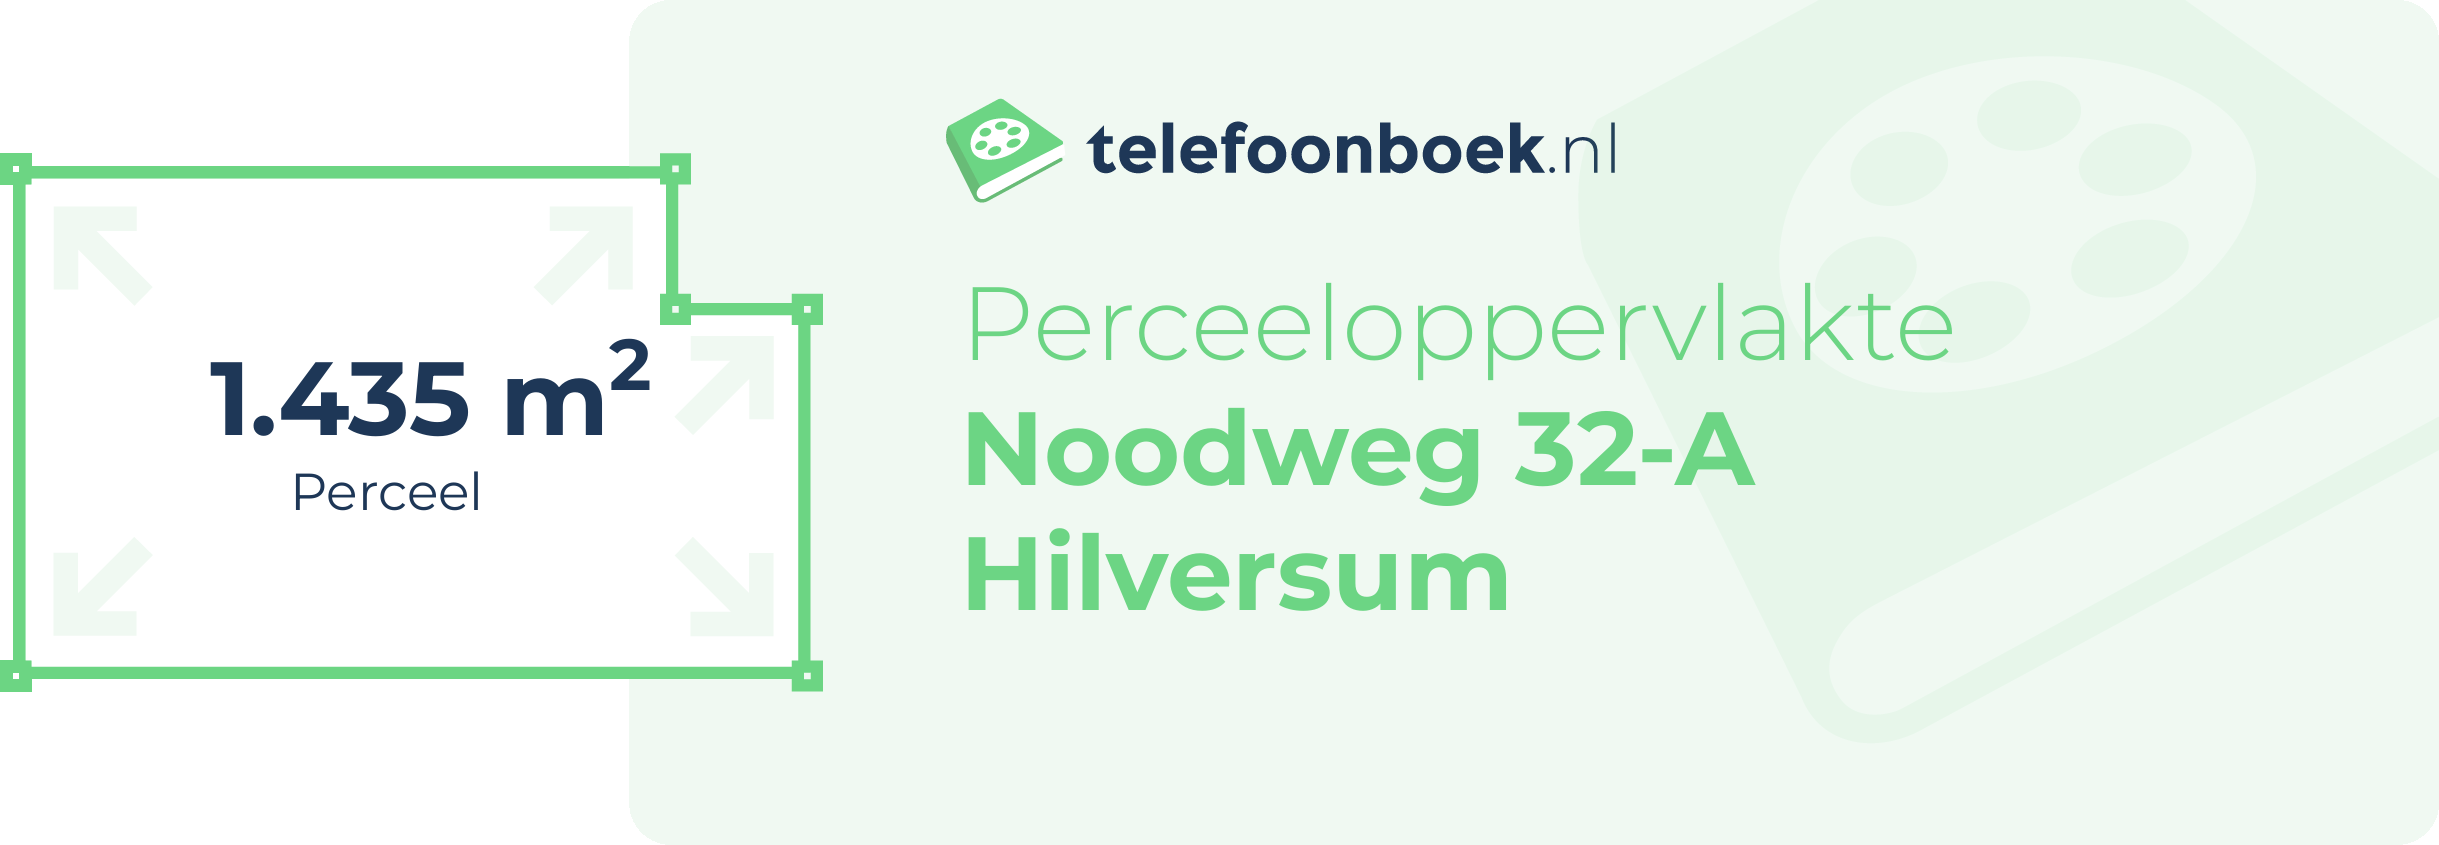 Perceeloppervlakte Noodweg 32-A Hilversum